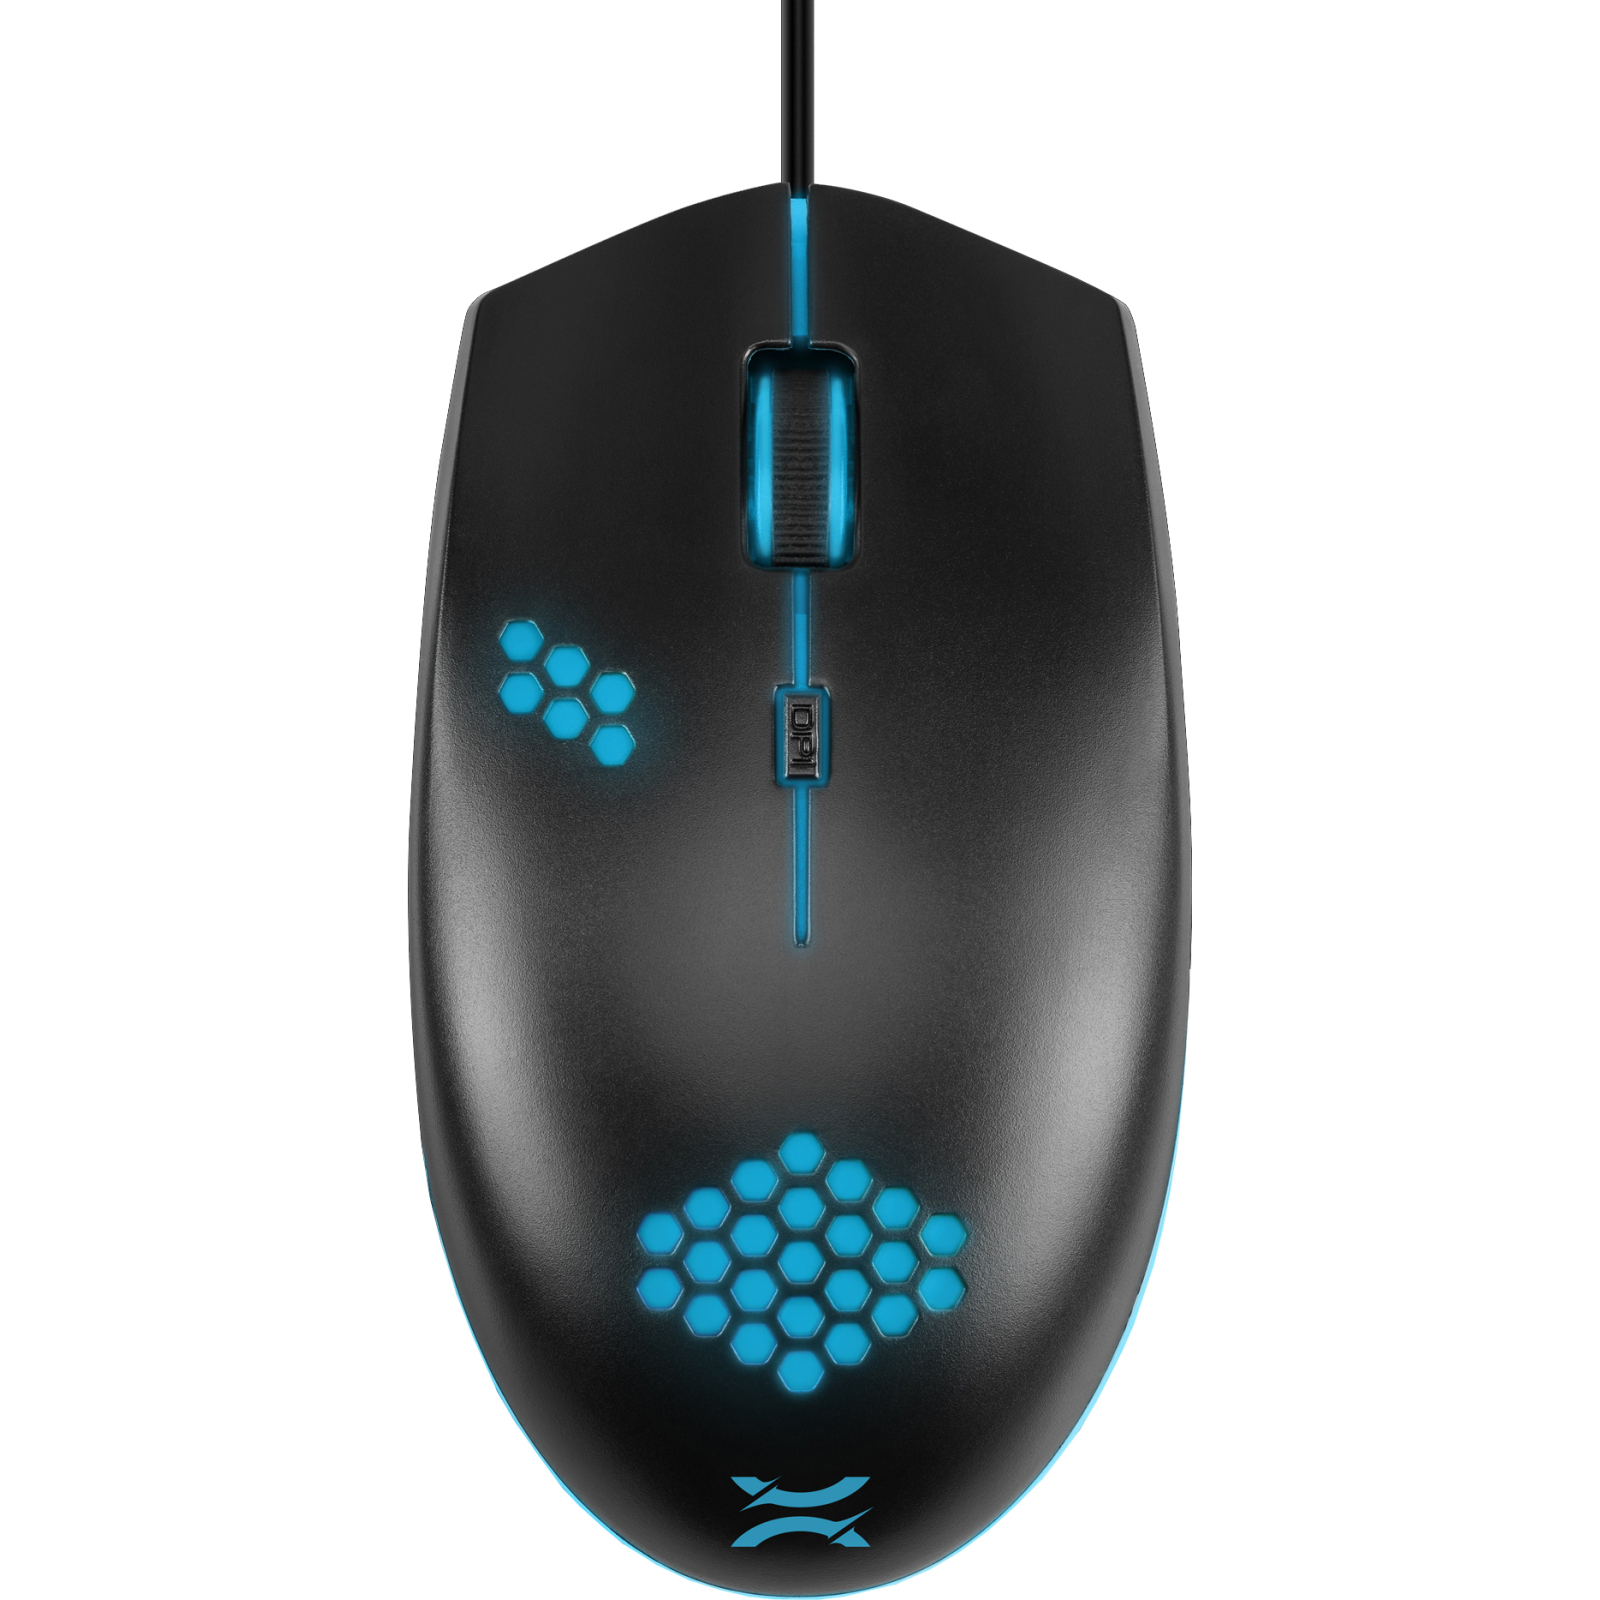 Мышка Noxo Thoon Gaming mouse USB Black (4770070881989) изображение 2